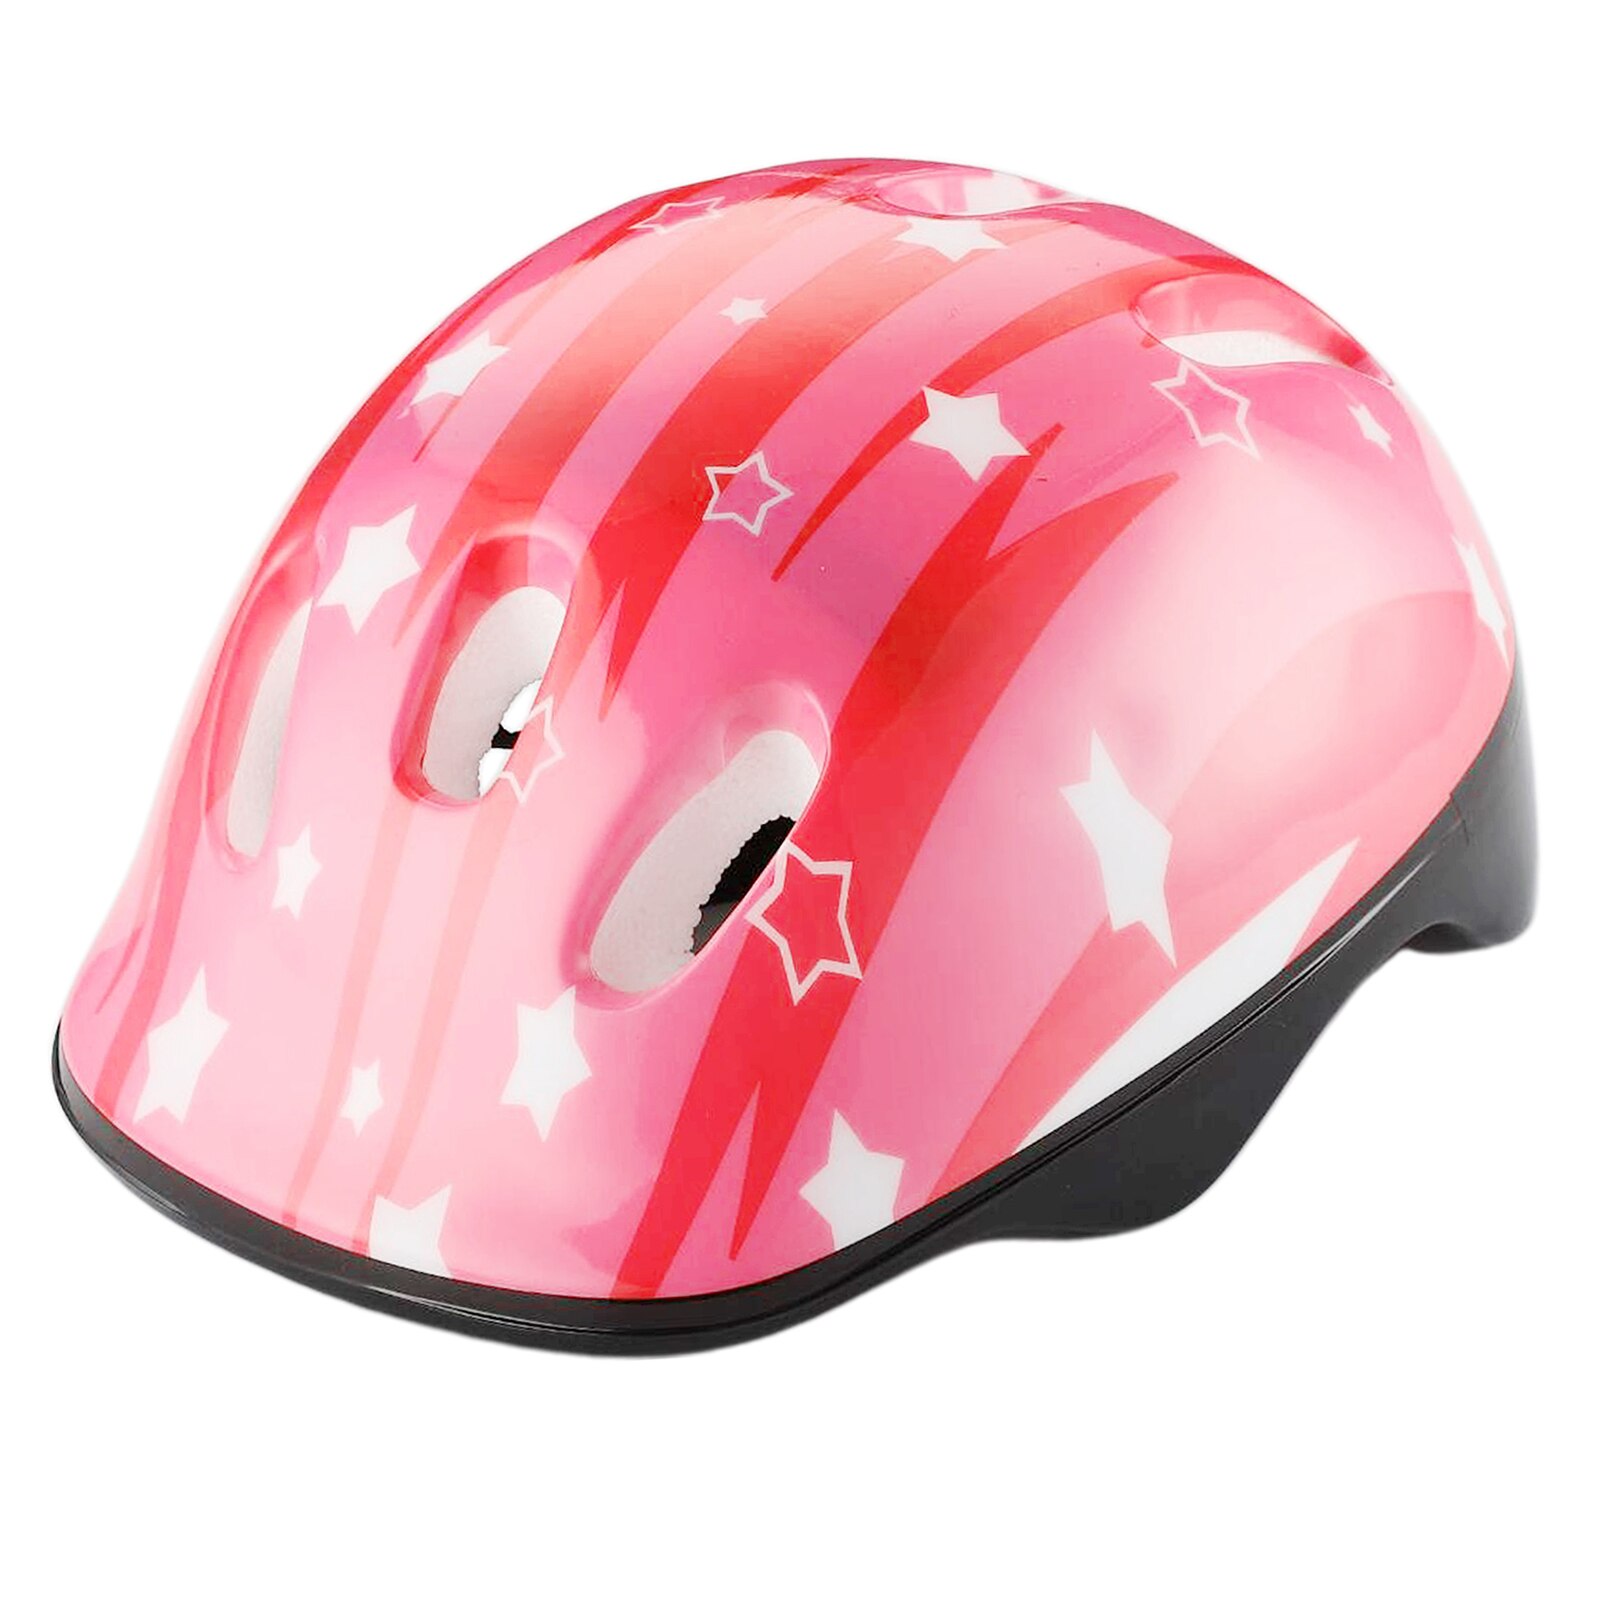 Vélo rond de sécurité/Ski léger, accessoire de Sport pour enfants, casque de cyclisme, taille de tête réglable, vélo de route en montagne: Pink